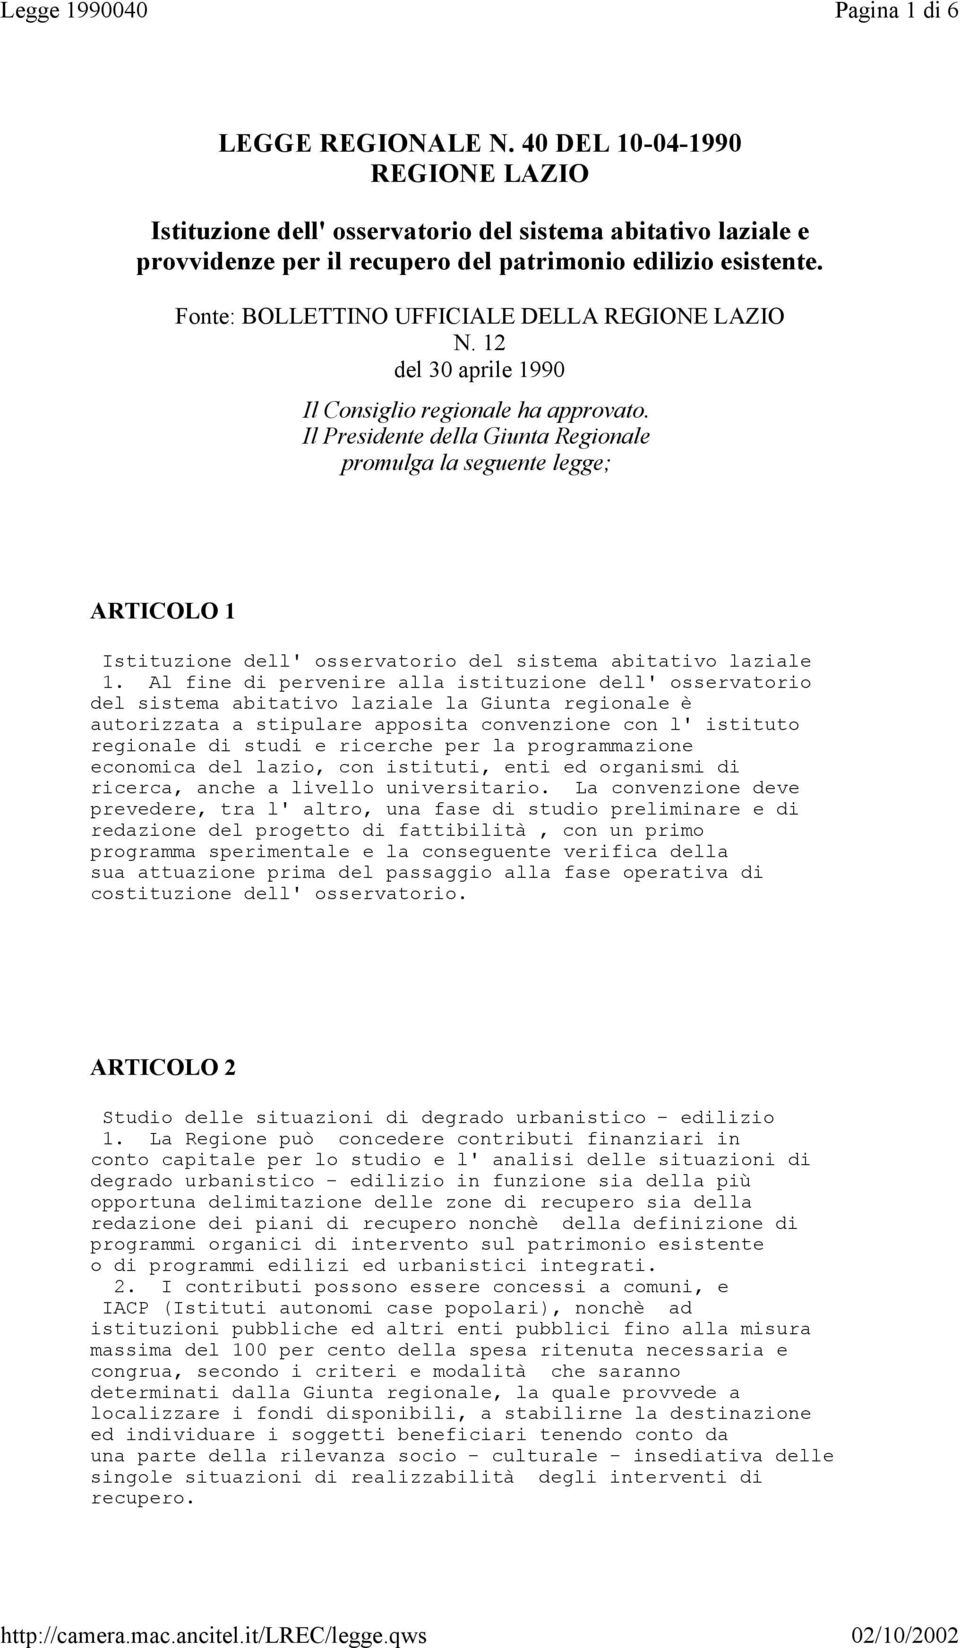 Fonte: BOLLETTINO UFFICIALE DELLA REGIONE LAZIO N. 12 del 30 aprile 1990 Il Consiglio regionale ha approvato.